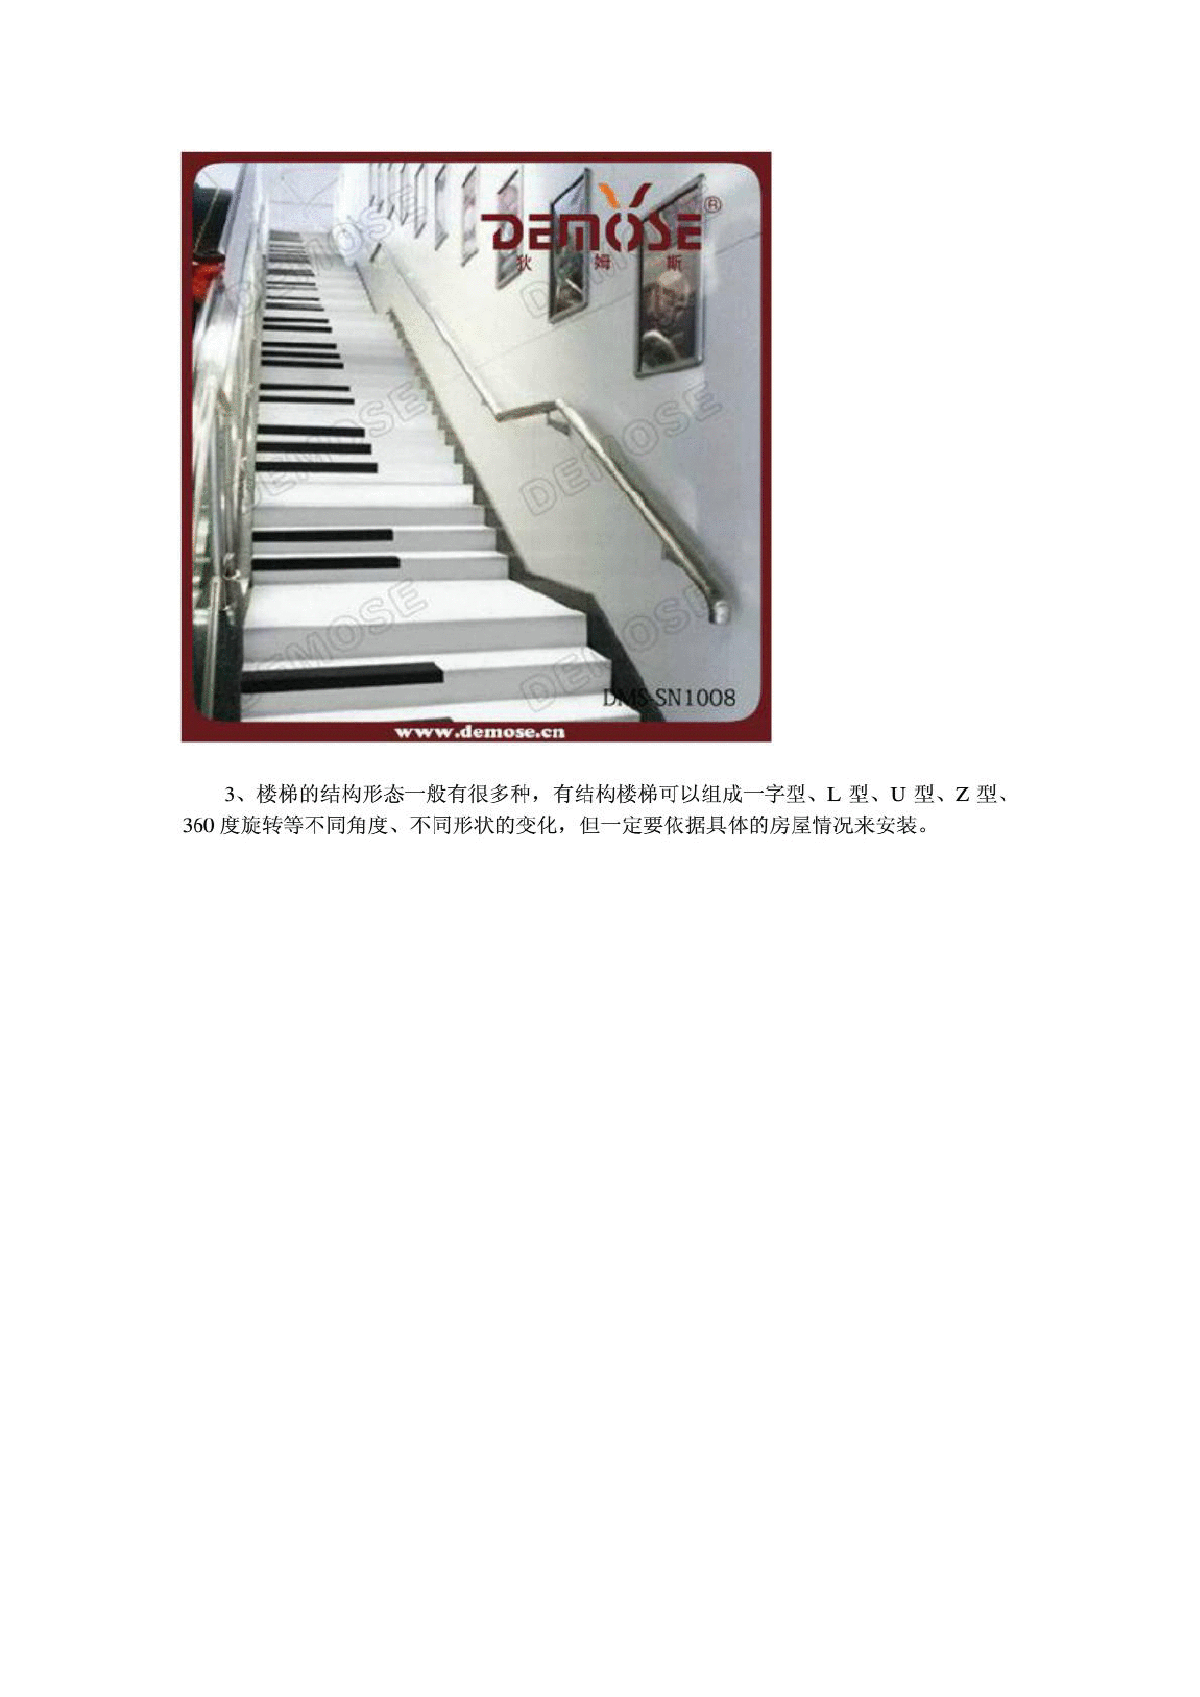 楼梯的组合方式及其异同点-图二